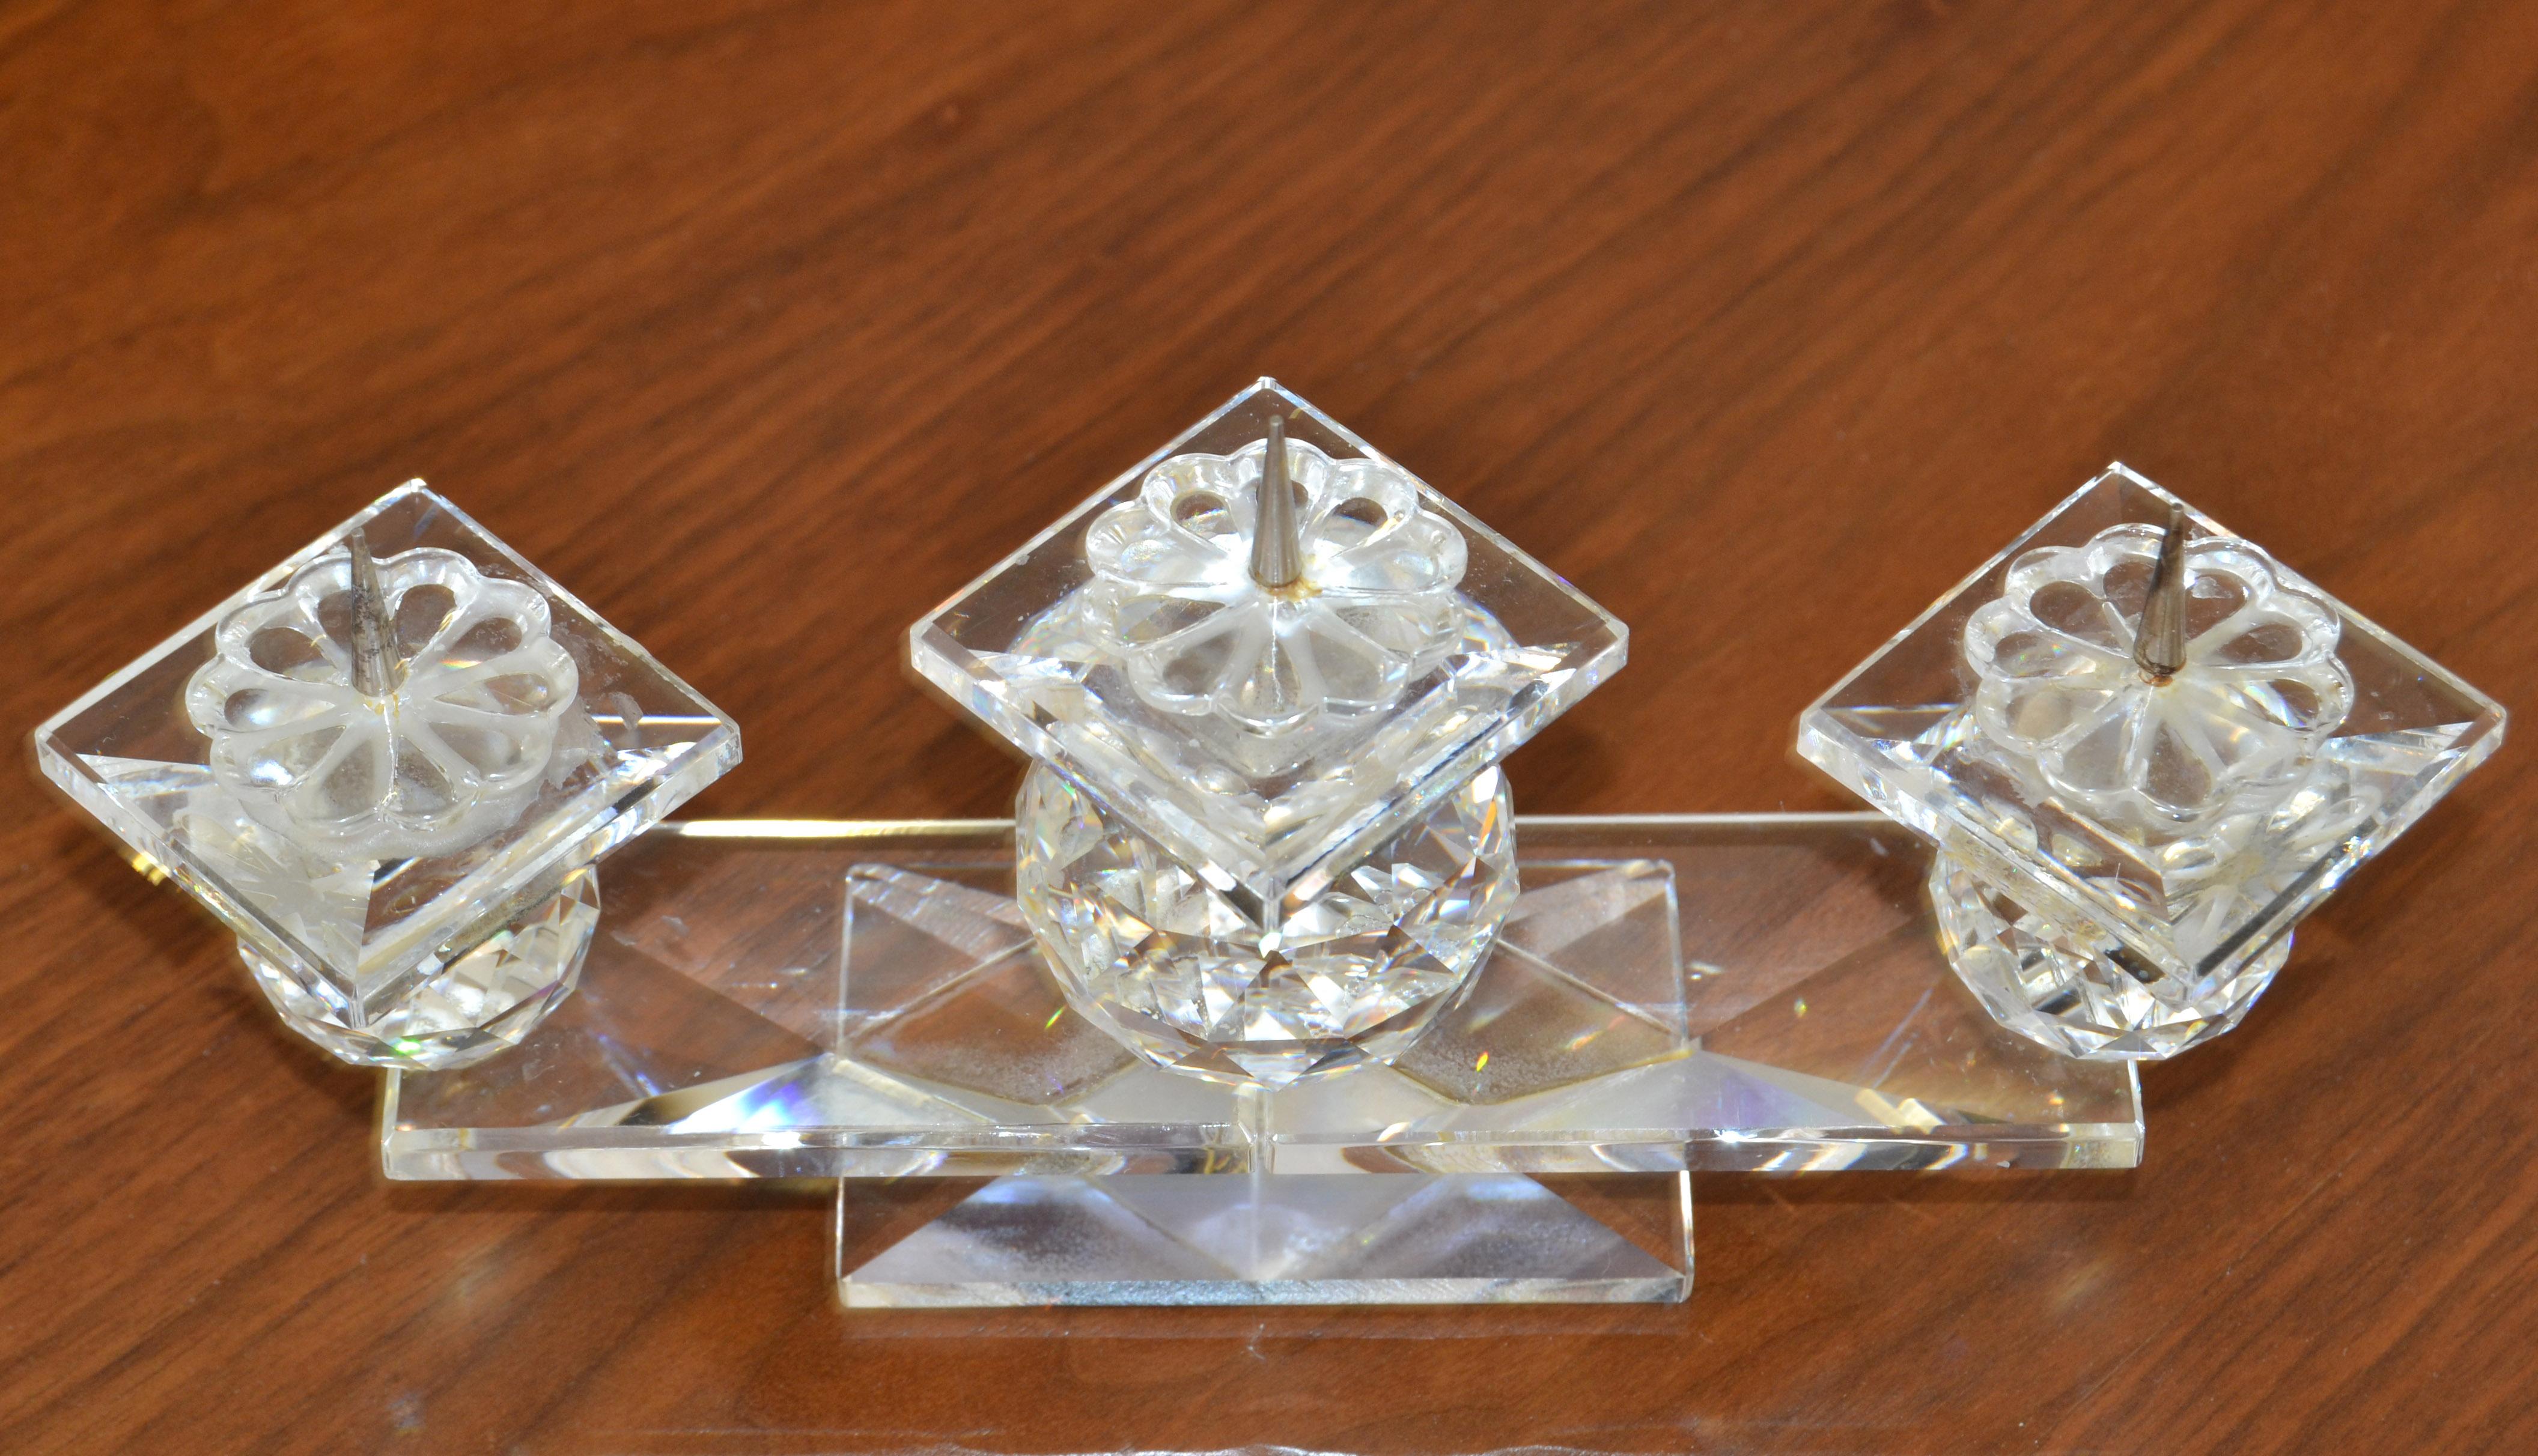 Chandelier vintage en cristal Swarovski à trois épingles de style Art of Vintage fabriqué en Autriche dans les années 1970.
Les boules de cristal facettées et les soucoupes fleuries sont disposées sur une base rectangulaire en verre.
Signé sur la